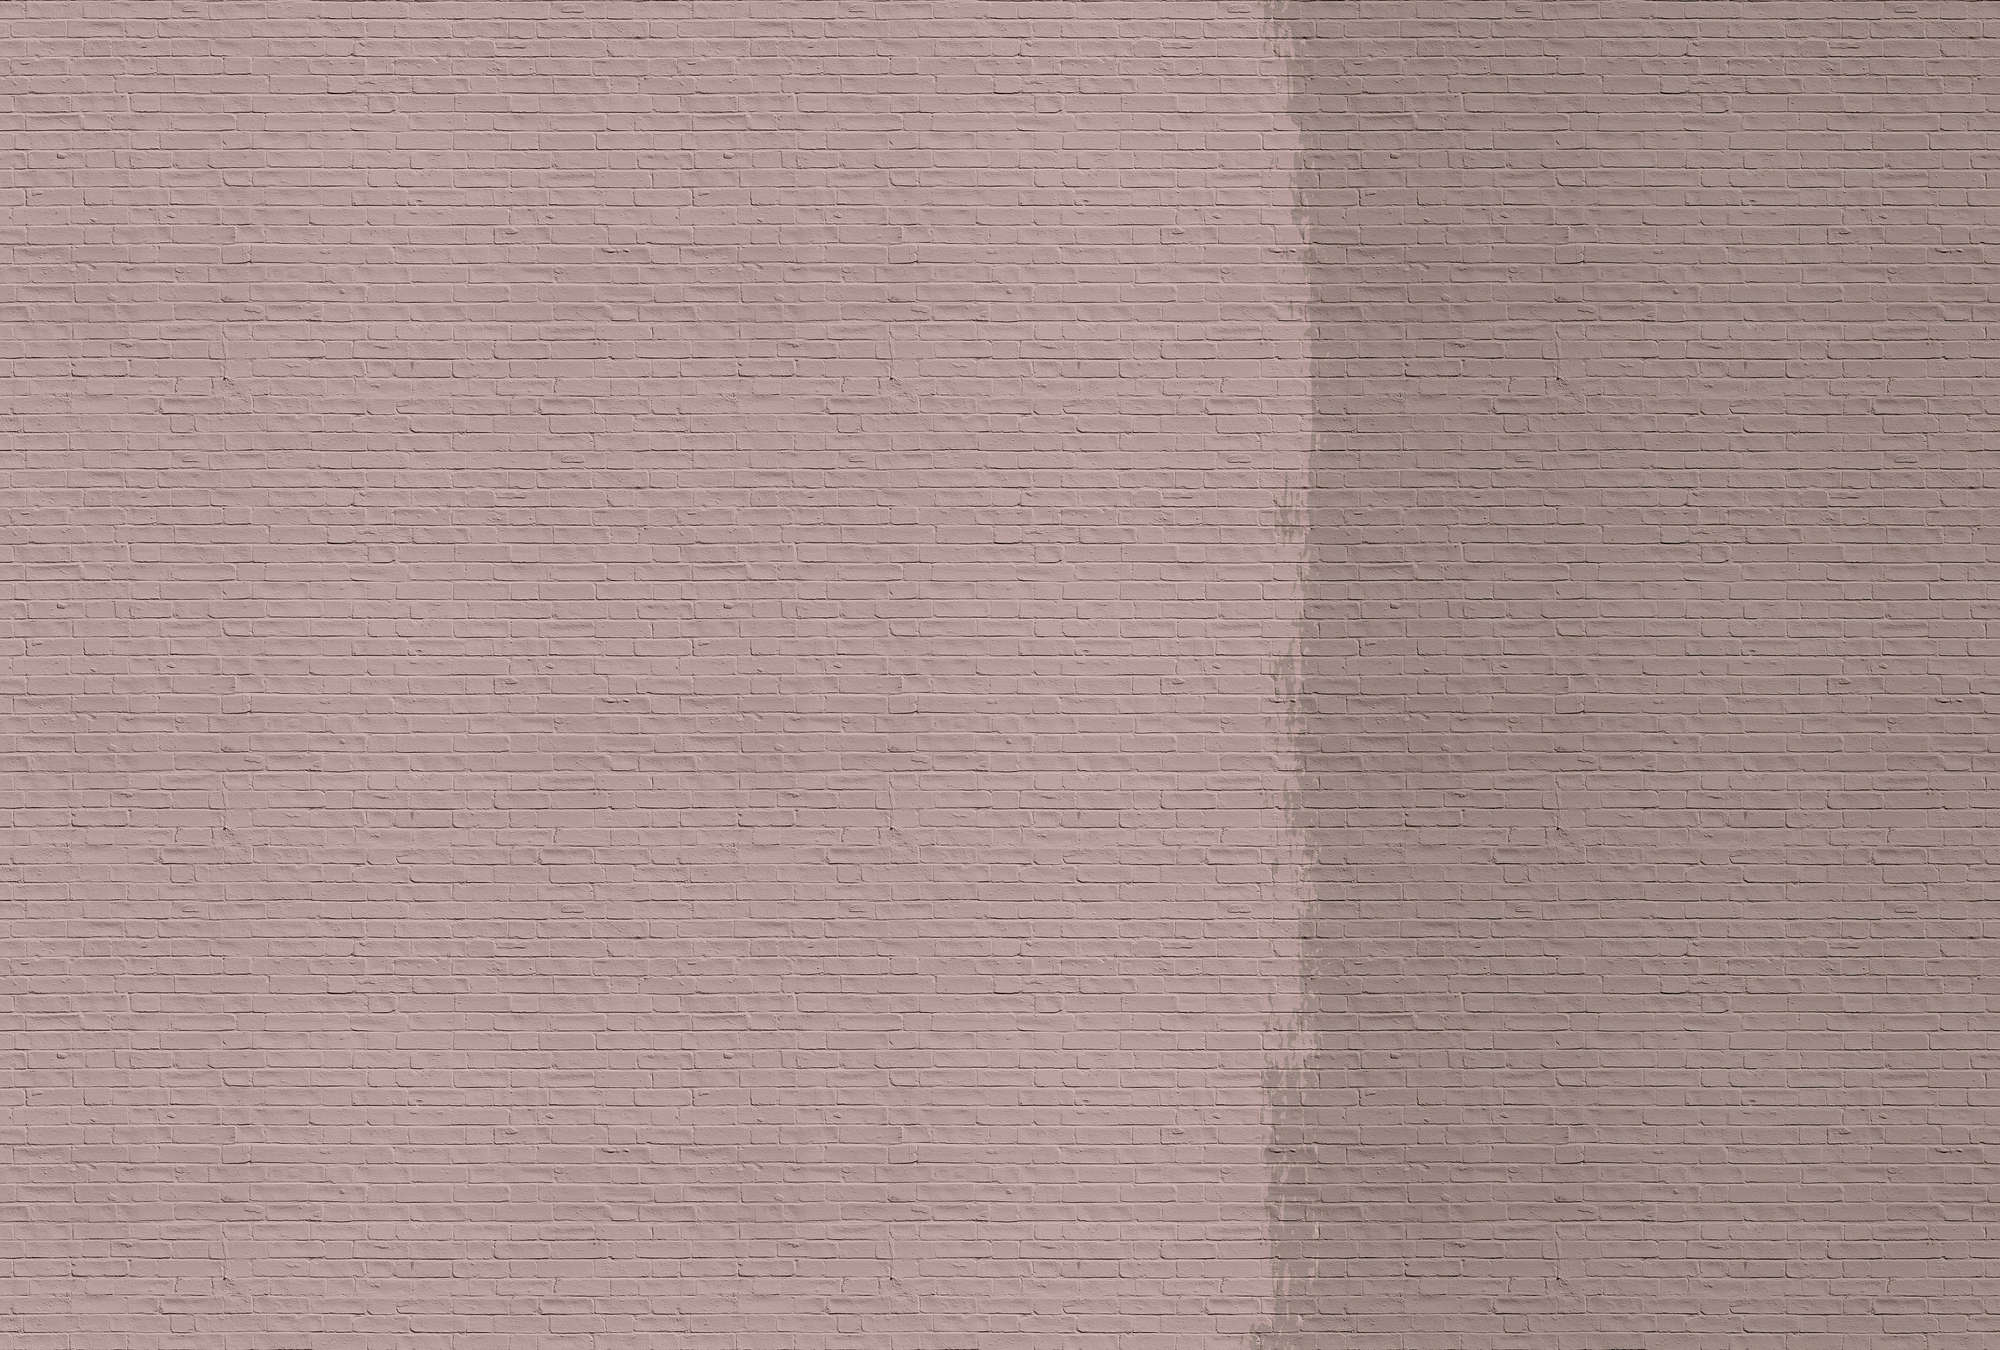             Tainted love 2 - Fototapete mit gestrichener Ziegelwand – Rosa, Taupe | Premium Glattvlies
        